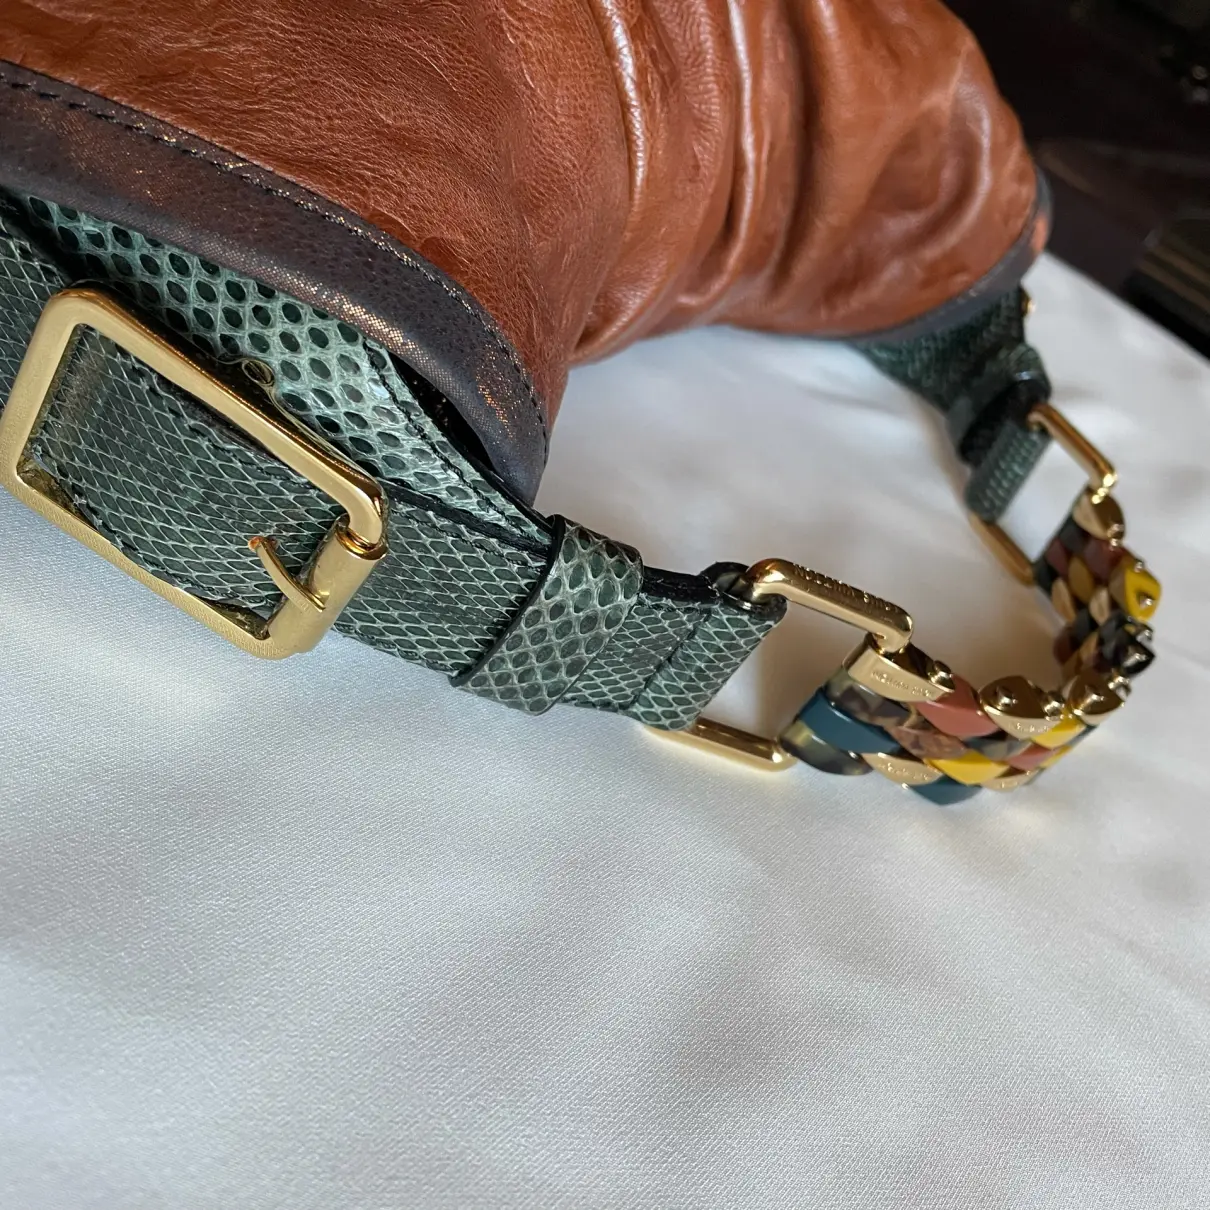 Kalahari leather handbag Louis Vuitton